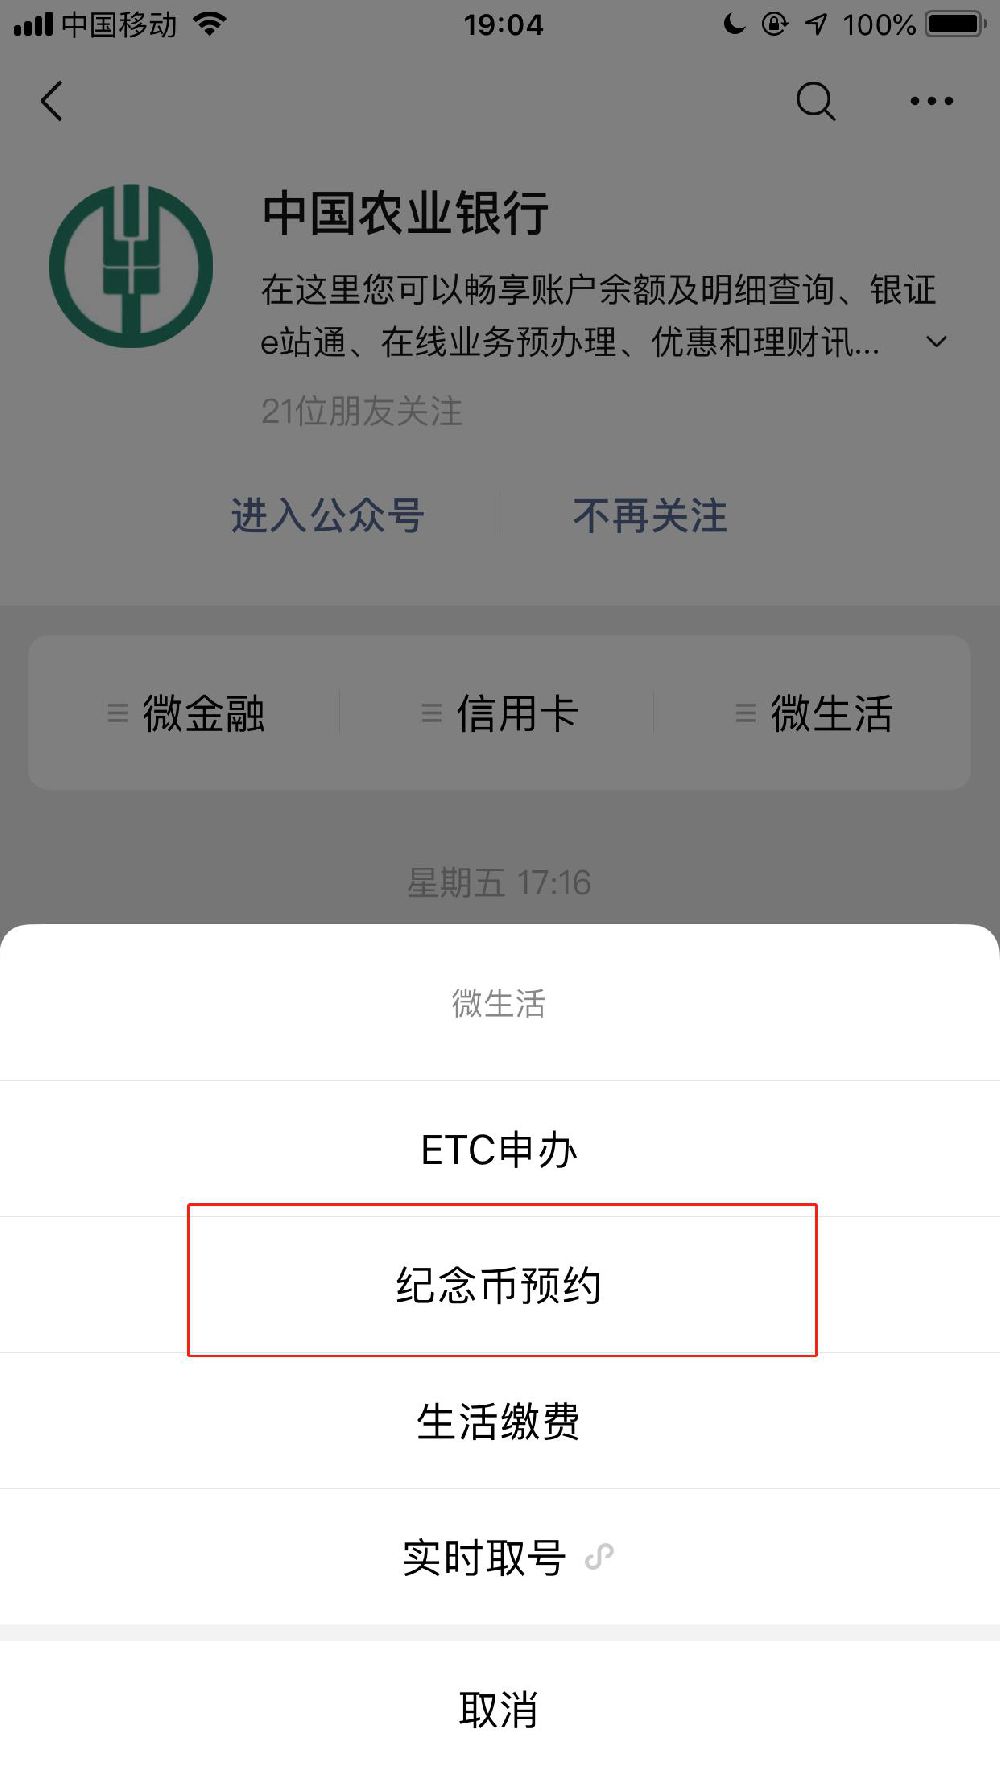 三,通过中国农业银行app(手机银行)预约纪念币1